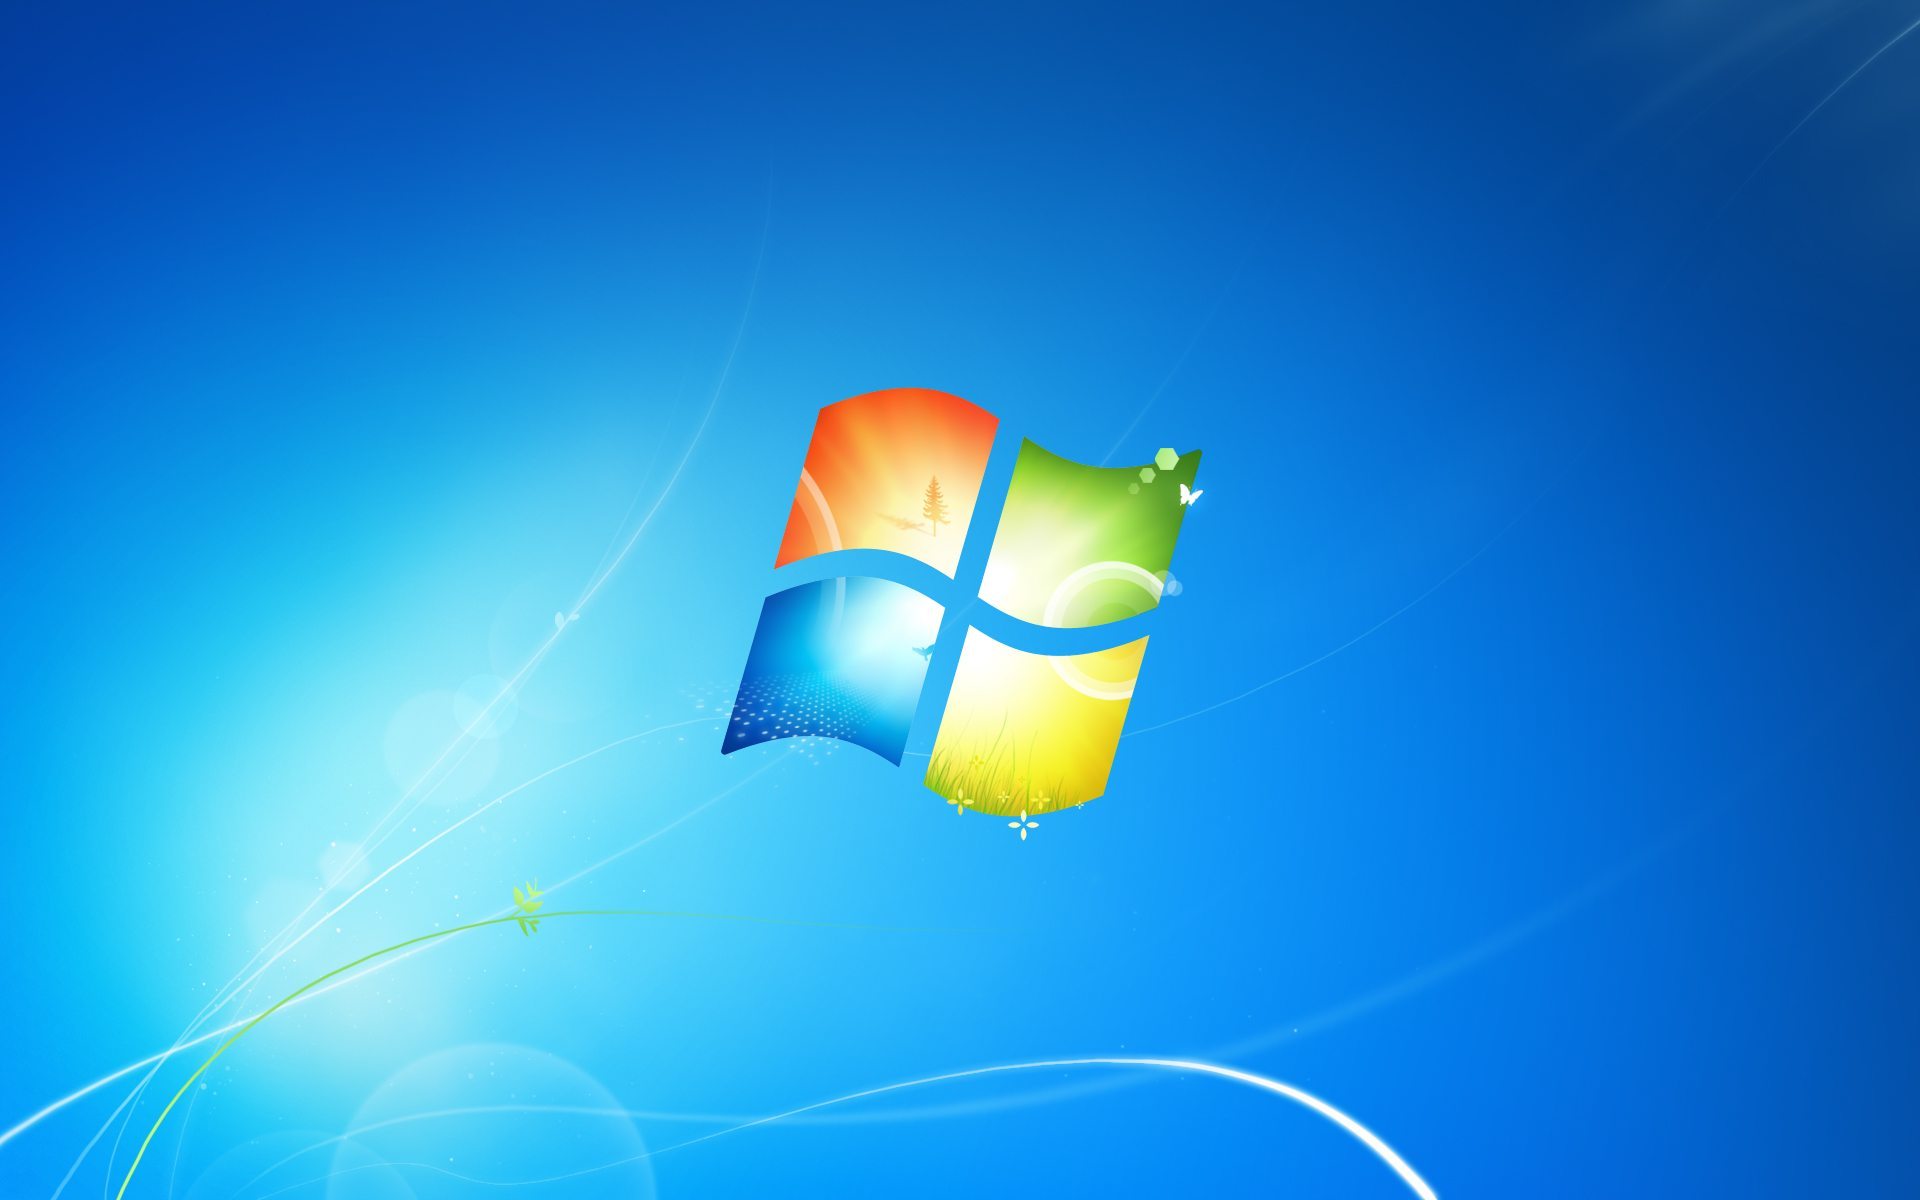 Hỗ trợ Windows 7 và 8 giúp cho người dùng có thêm nhiều lựa chọn về các tính năng mới, nâng cao hiệu suất và tăng tốc độ khởi động máy tính. Đảm bảo cho bạn sĩ diện làm việc thoải mái và hiệu quả hơn bao giờ hết.